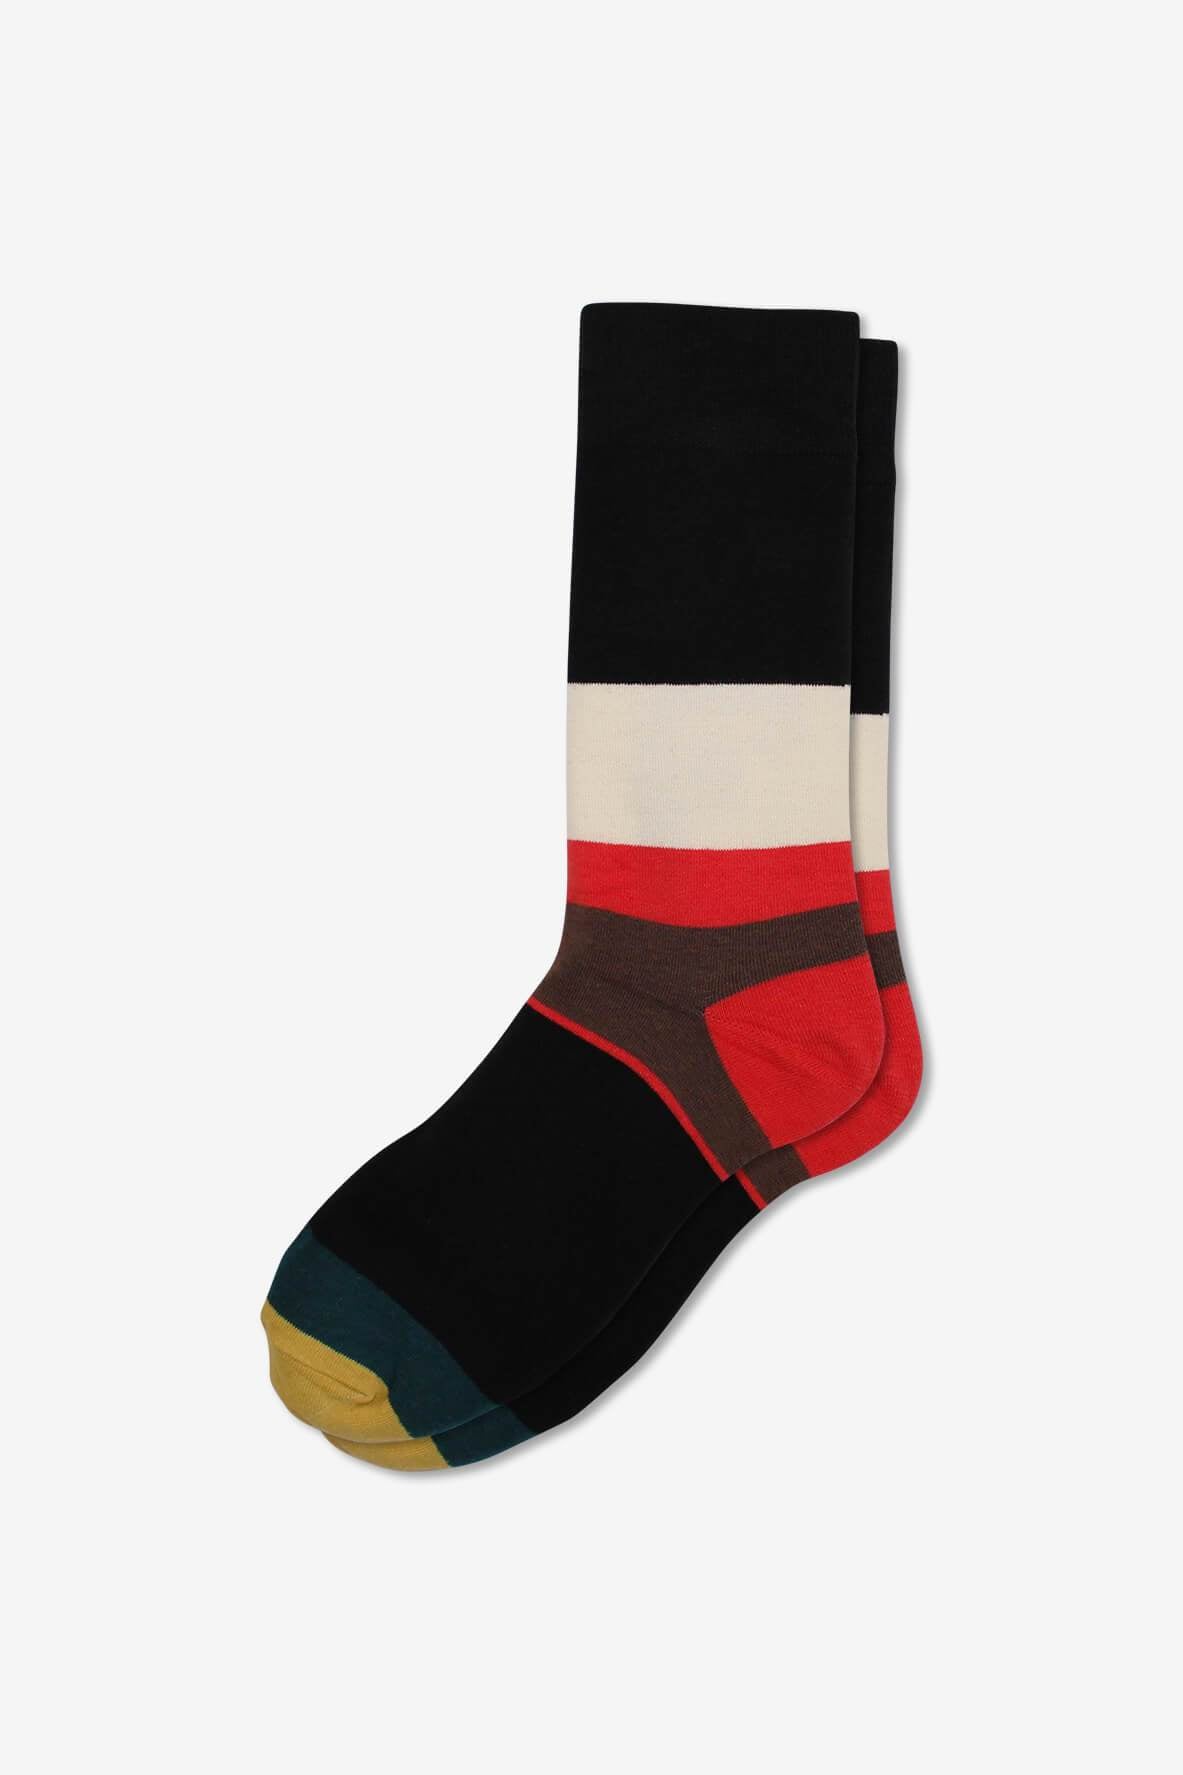 Socks IMG_5230, socks, GoTie